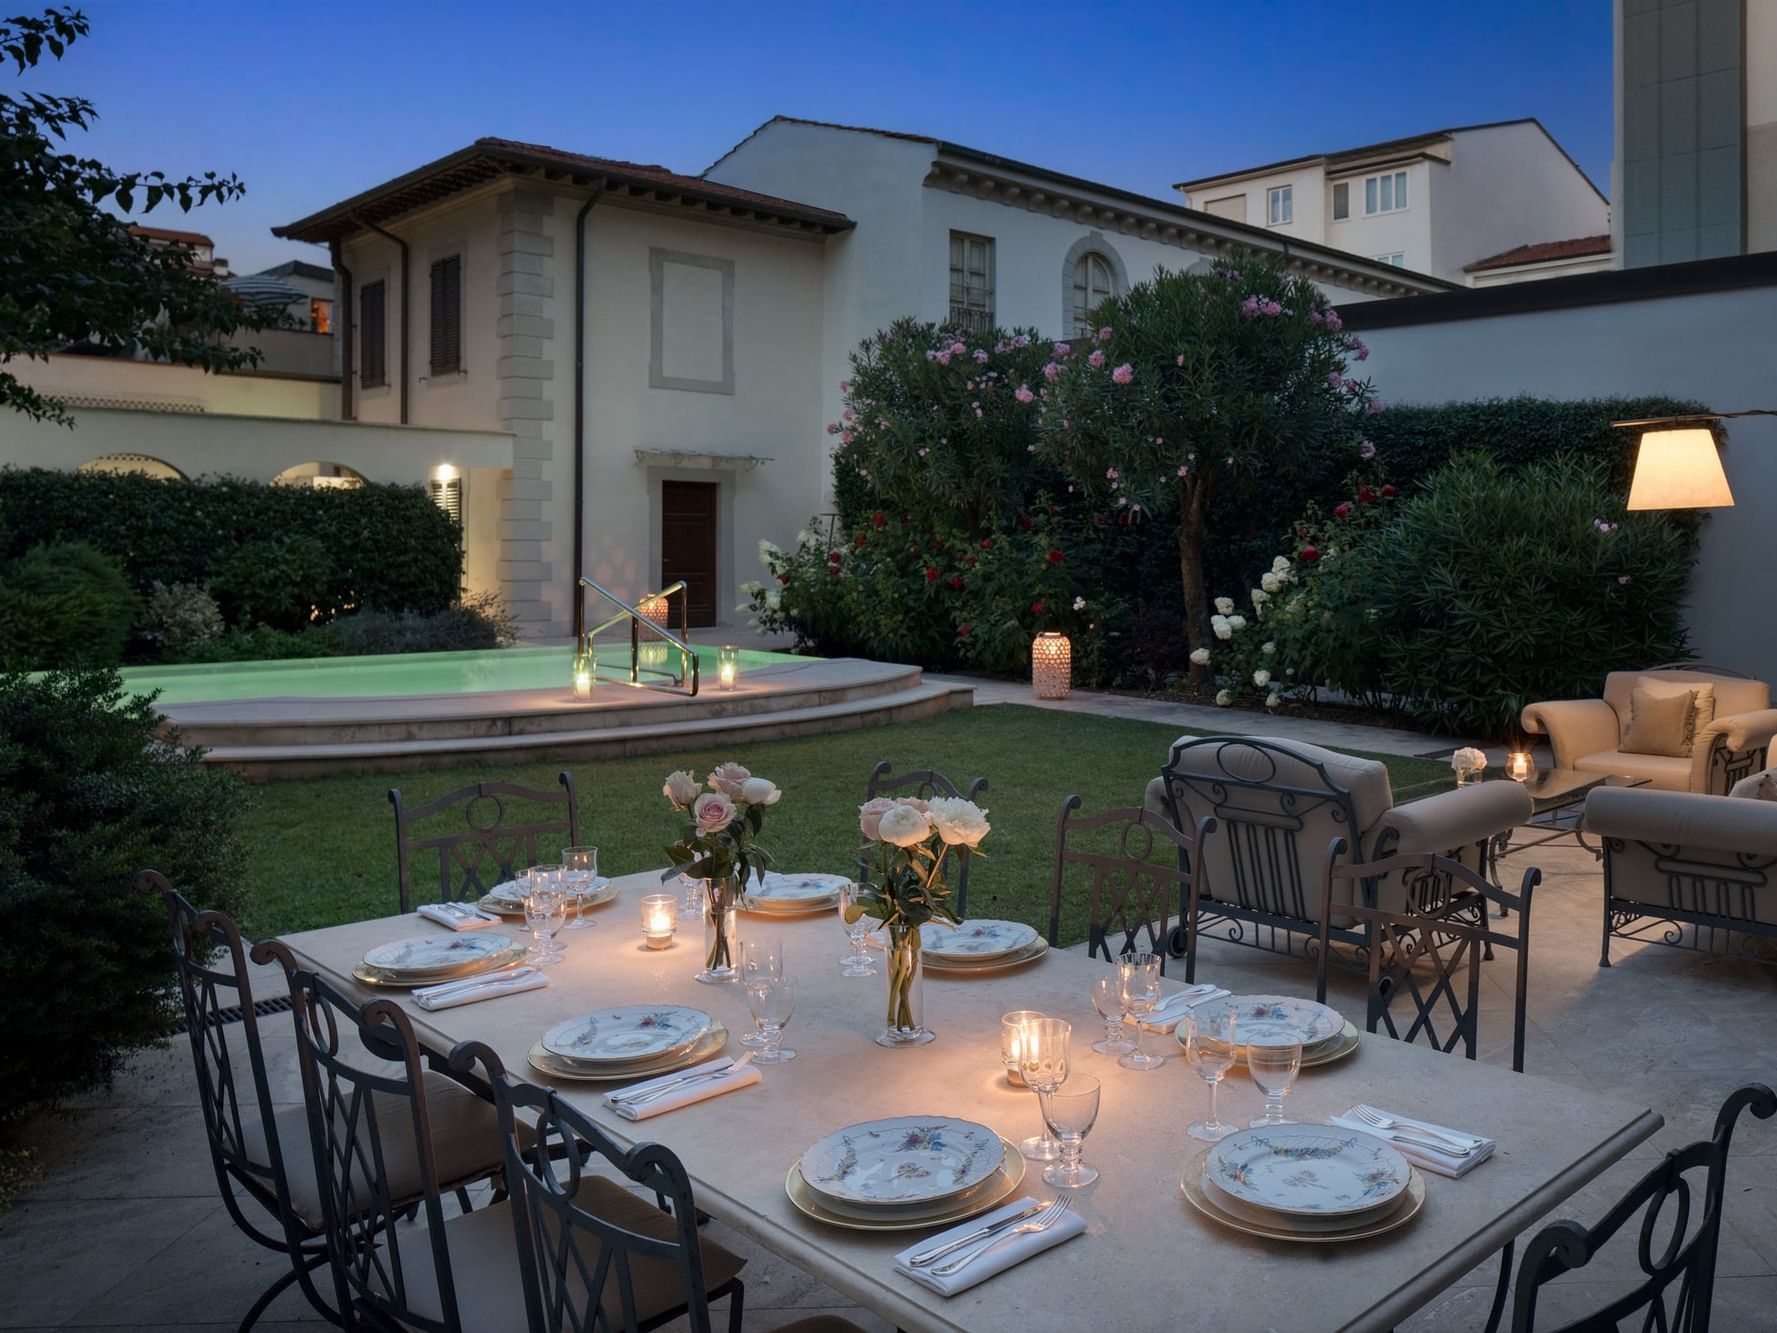 Luxury Villa Manin Viareggio UNA Esperienze